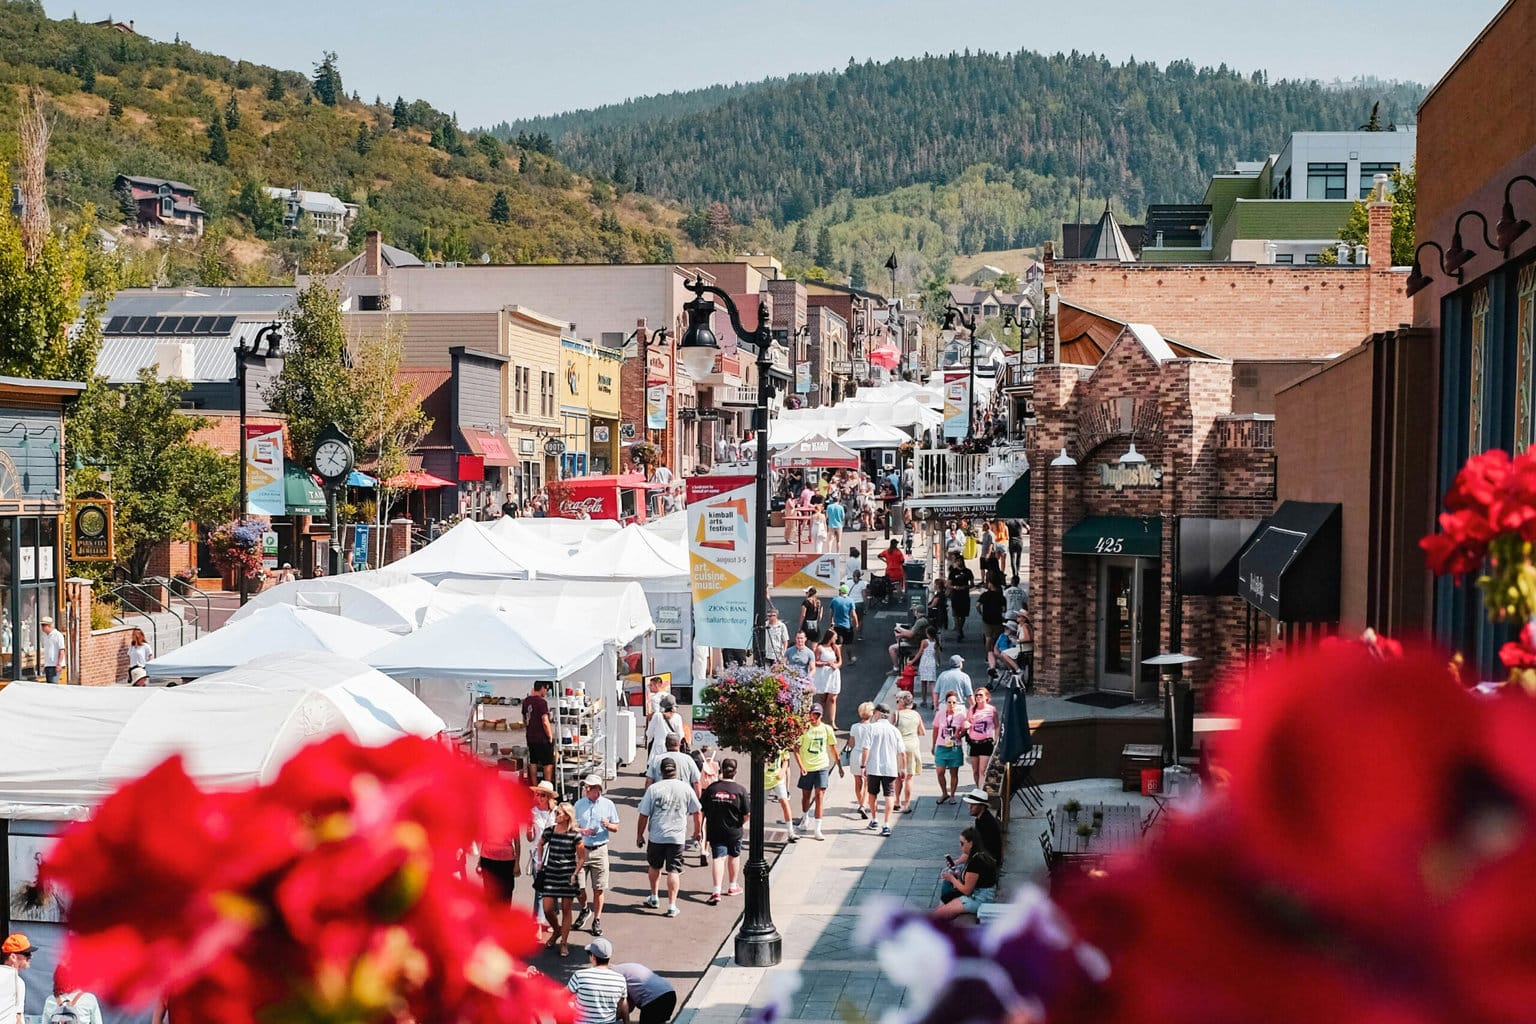 street fair in a mountain town